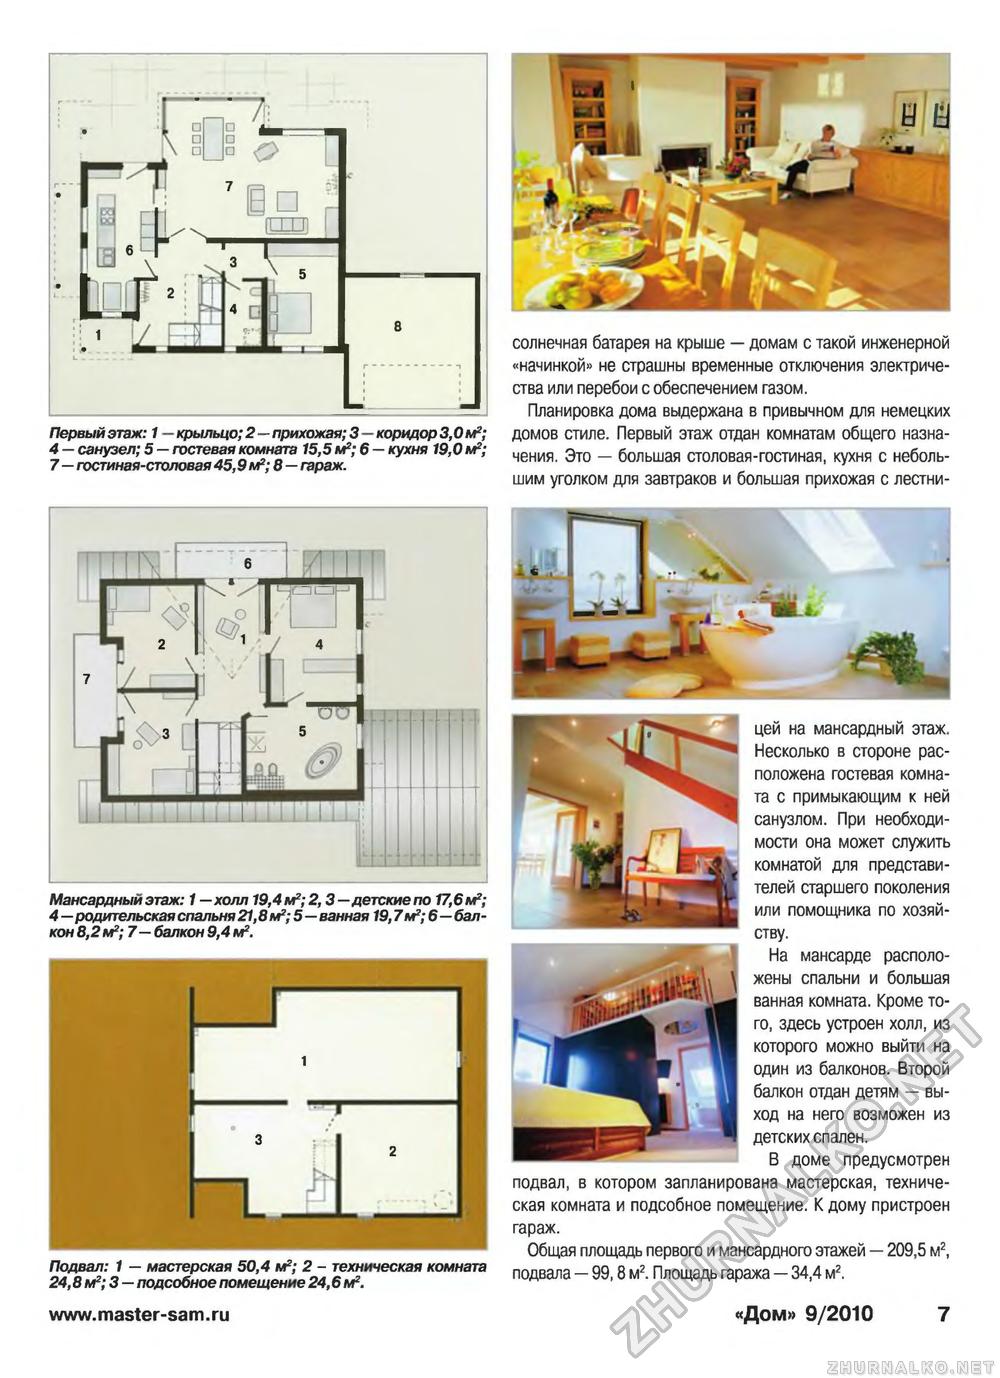 Дом 2010-09, страница 7